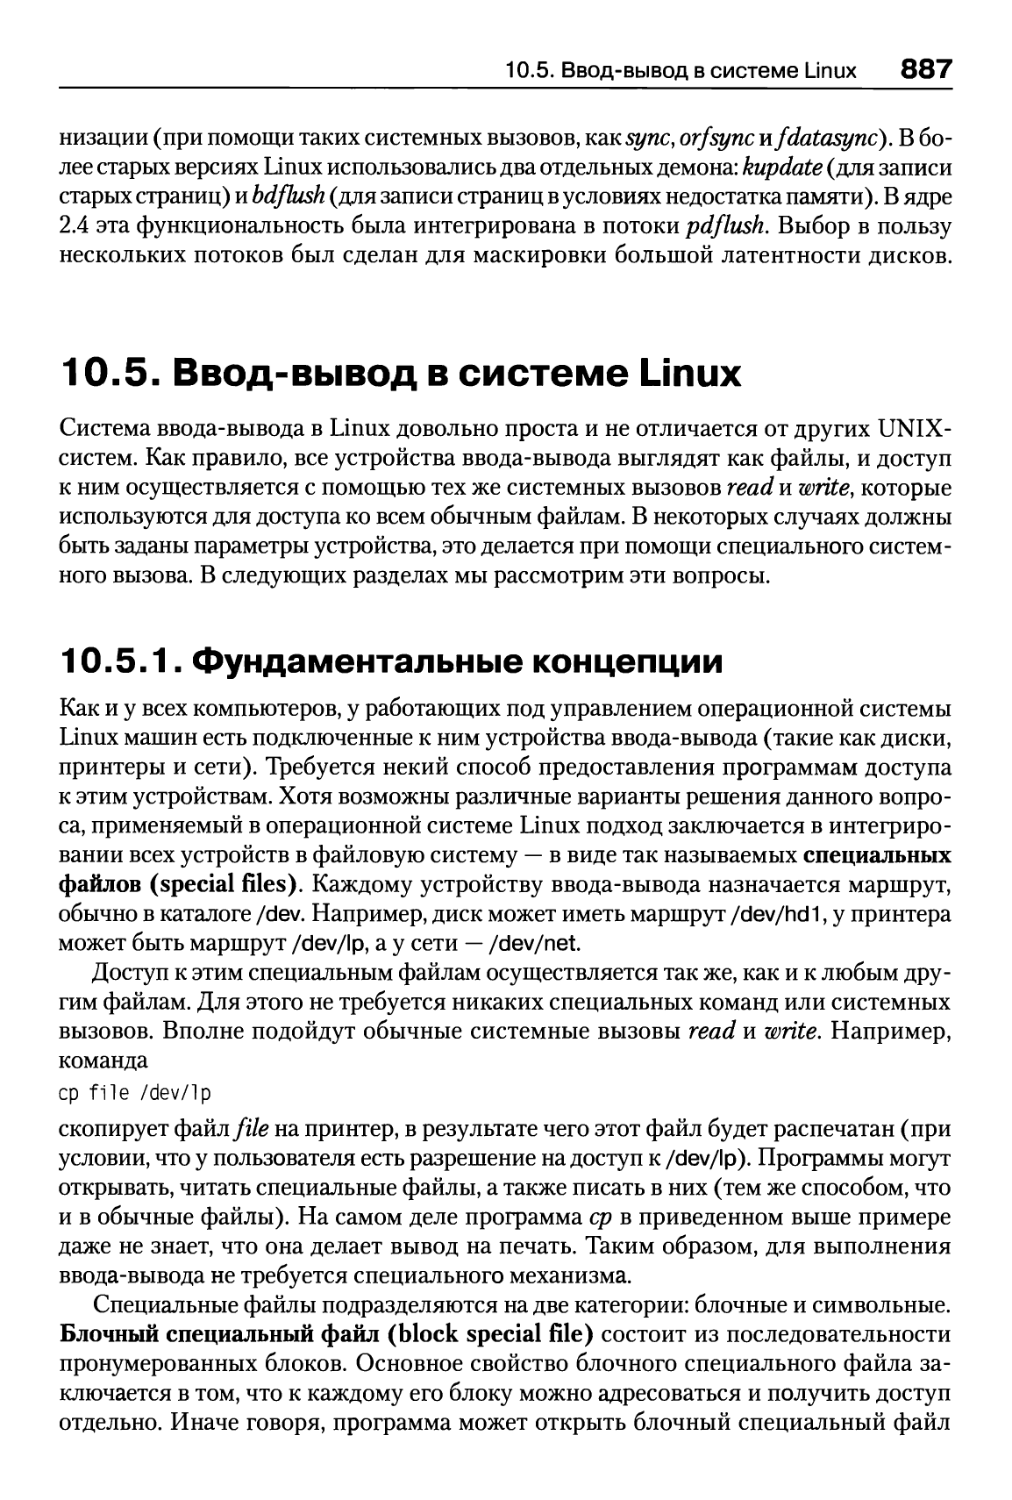 10.5. Ввод-вывод в системе Linux